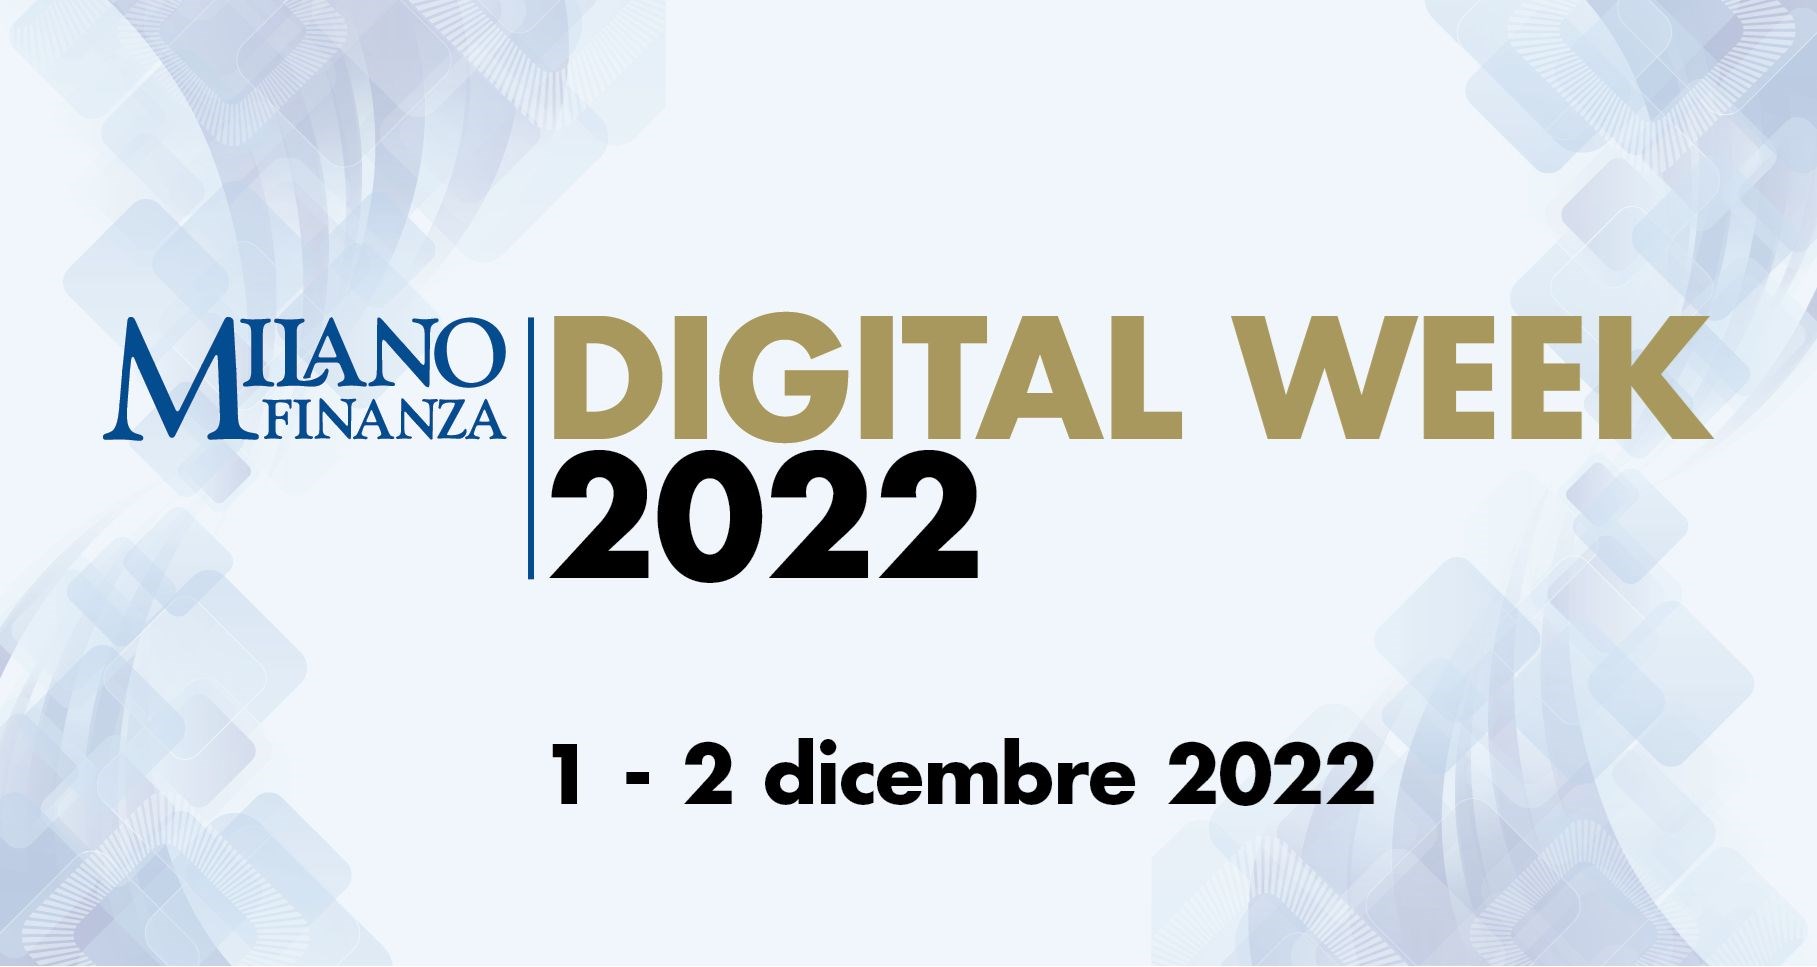 Milano Finanza Digital Week 2022